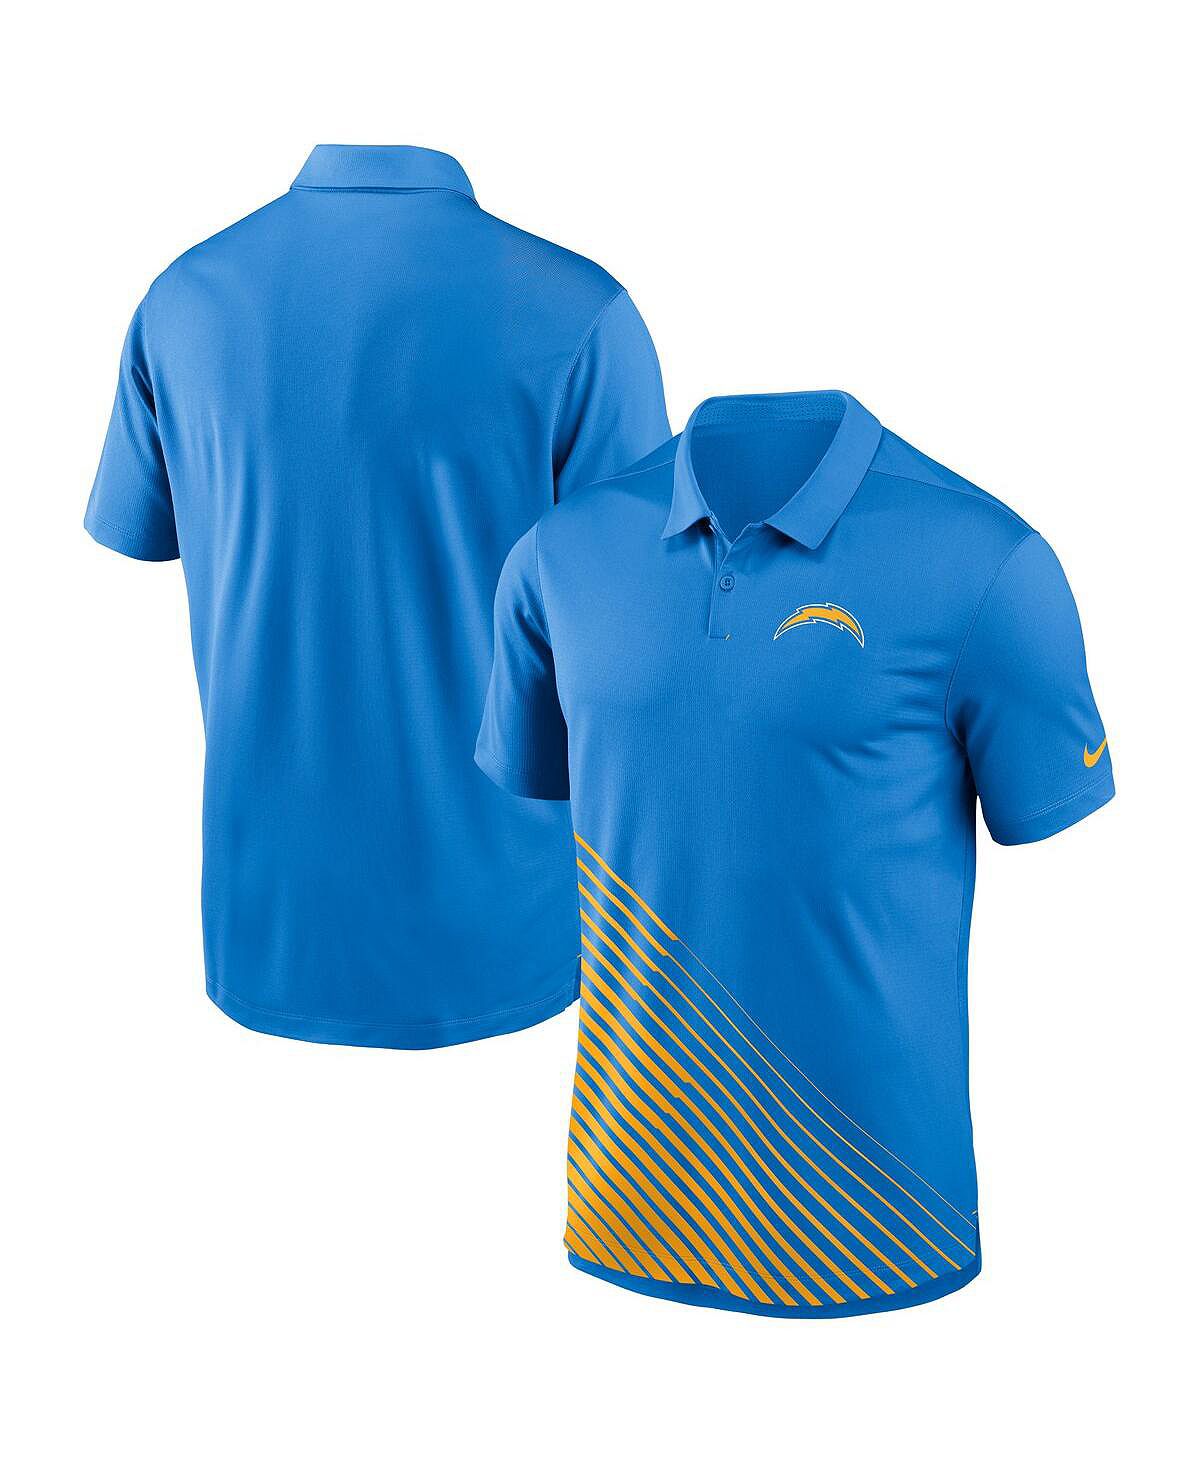 Мужская рубашка-поло синего цвета Los Angeles Chargers Vapor Performance Nike коньки bauer vapor 3x int 4 fit 2